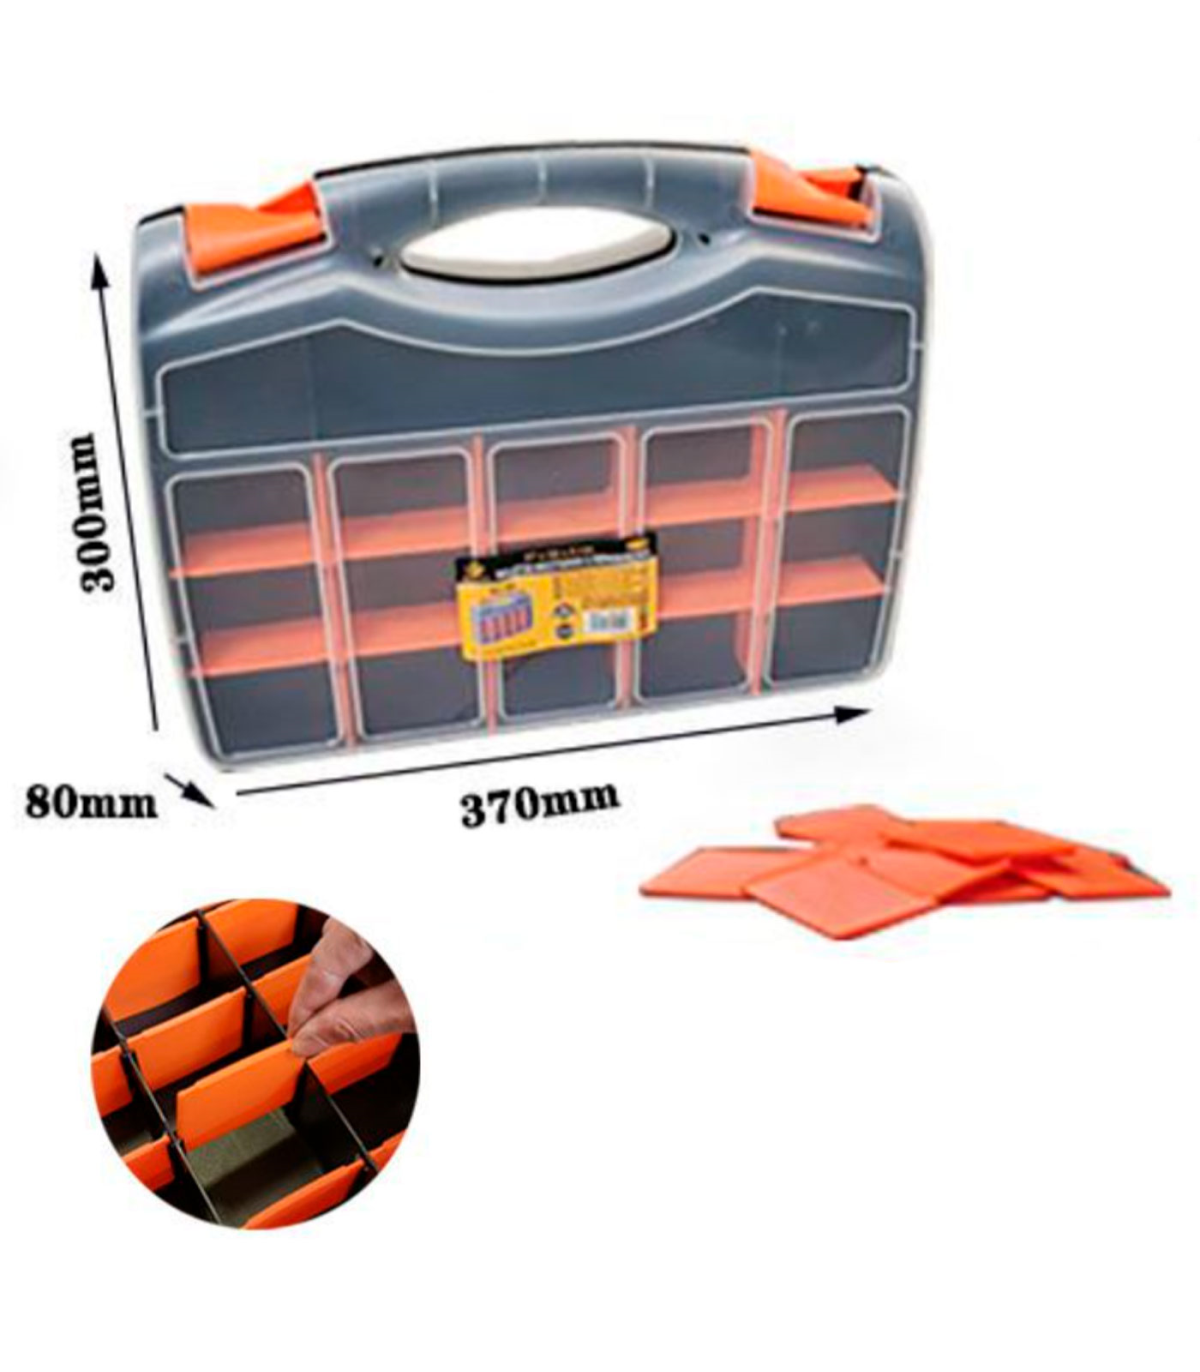 Caja organizadora de plástico de 37 x 30 x 8 cm con 2 compartimentos y asa.  Organizador de herramientas para hogar o trabajo. Ma